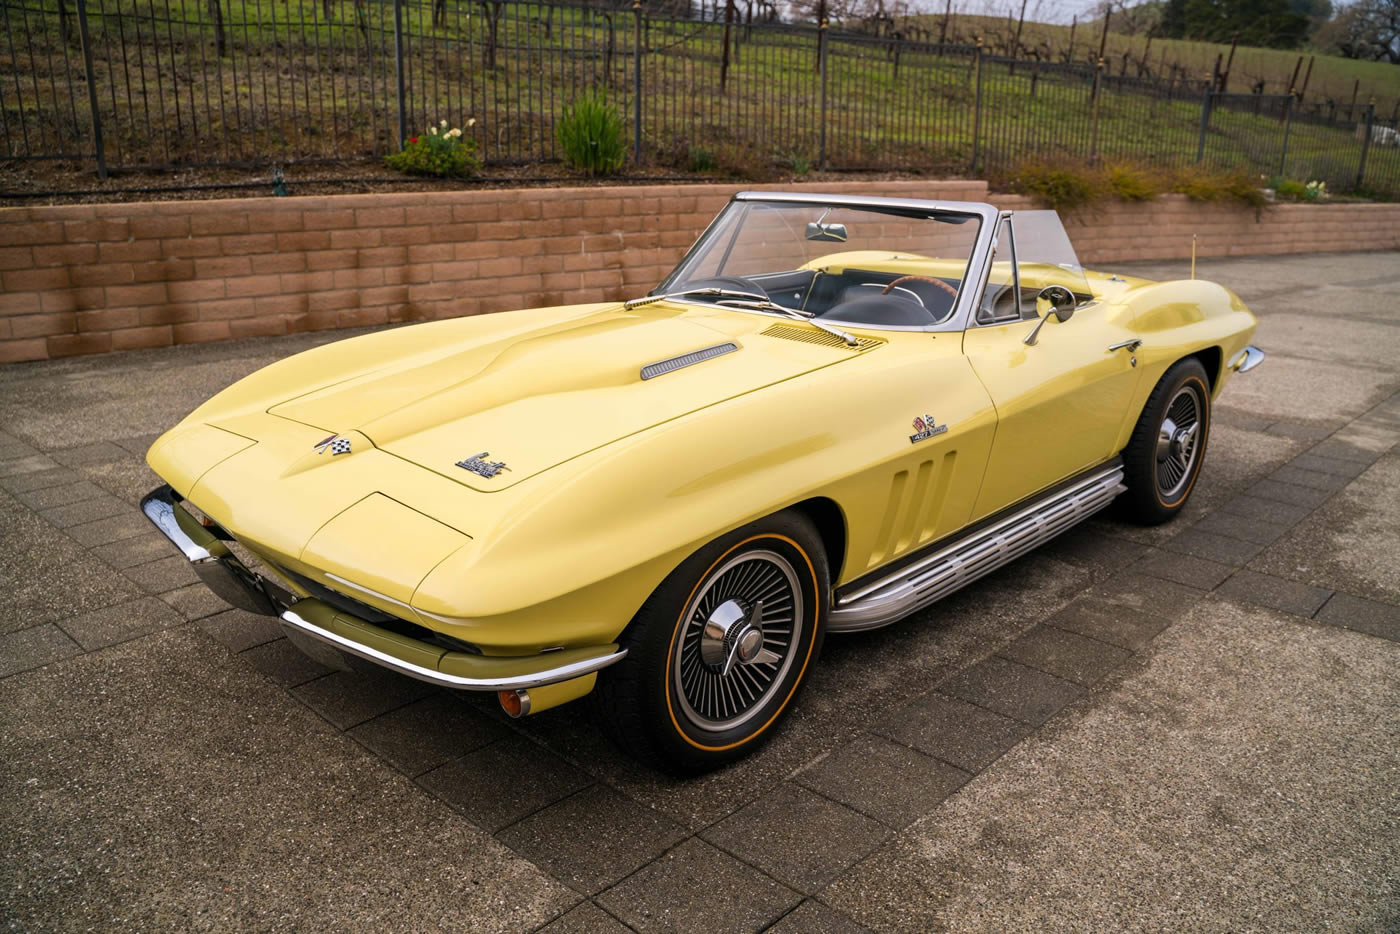 1966 Corvette Convertible L72 in Sunfire Yellow